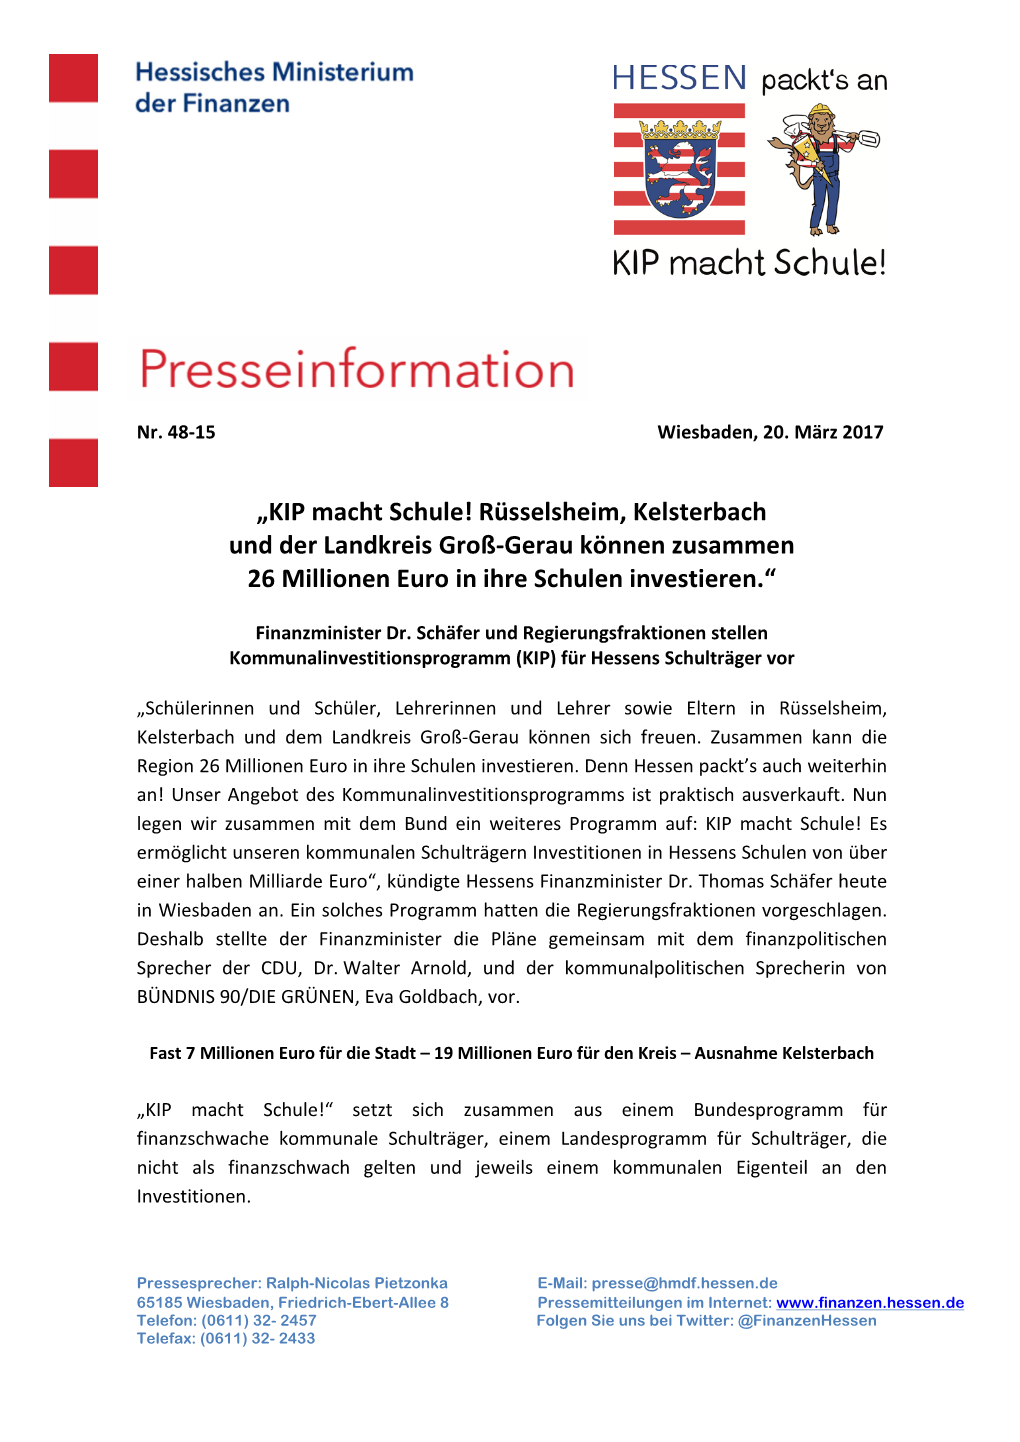 „KIP Macht Schule! Rüsselsheim, Kelsterbach Und Der Landkreis Groß-Gerau Können Zusammen 26 Millionen Euro in Ihre Schulen Investieren.“